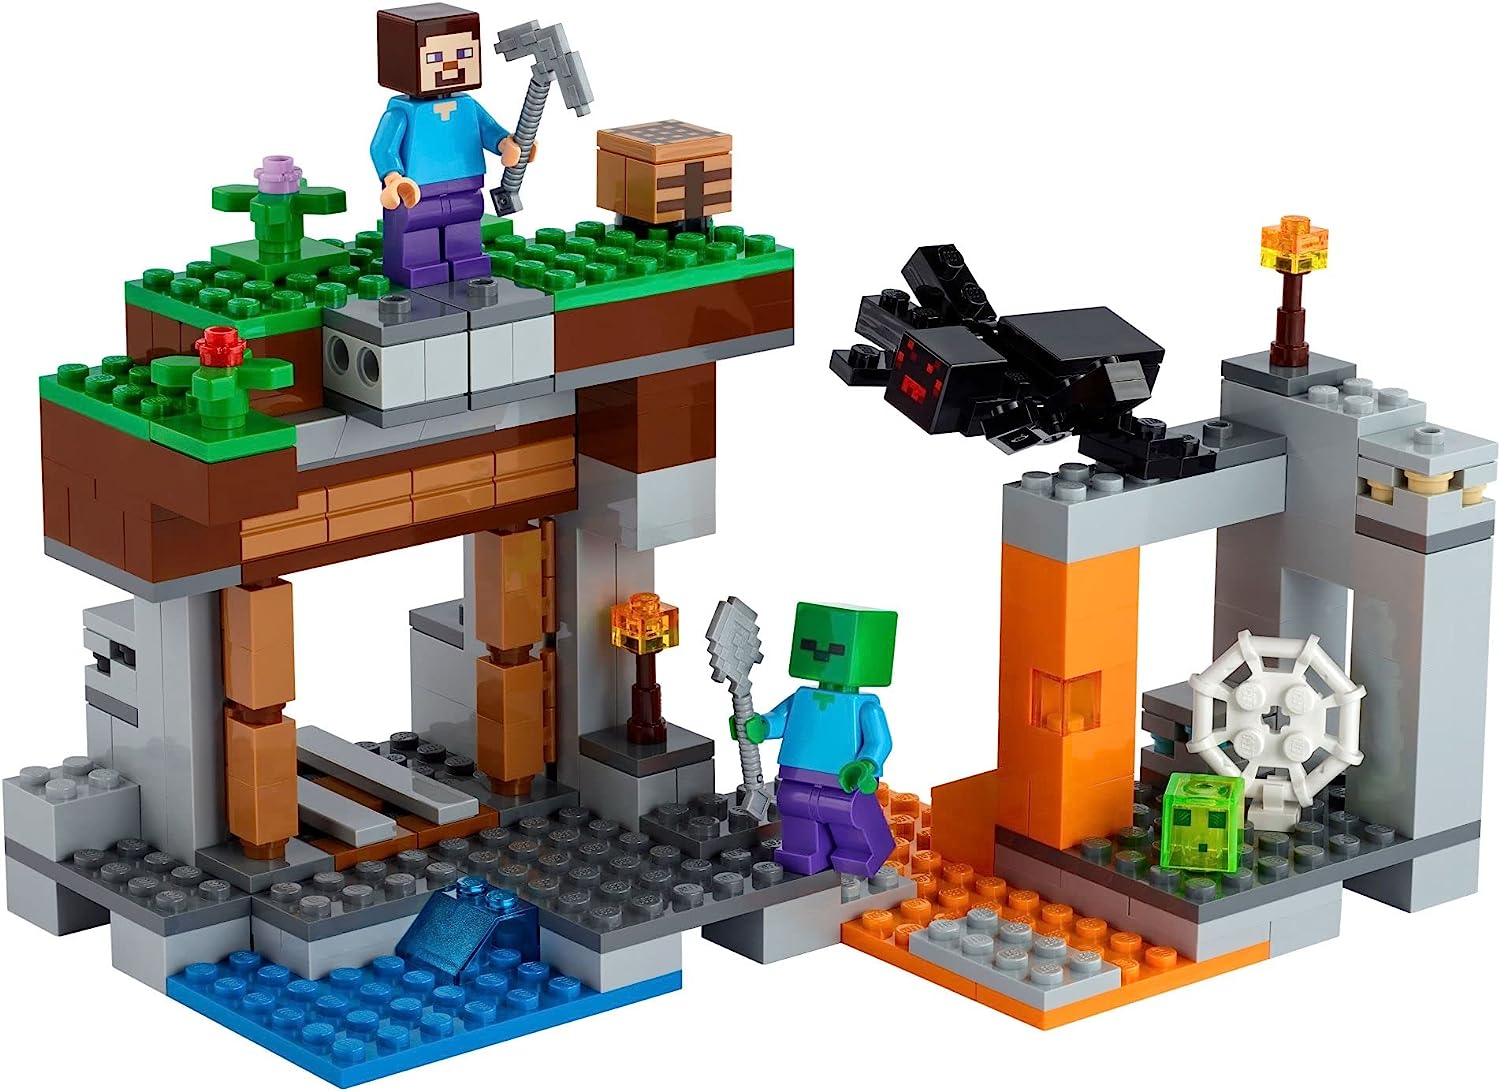 全国組立設置無料 楽天市場 レゴ マインクラフト 送料無料 Lego Minecraft The Abandoned Mine Zombie Cave Battle Playset With Minecraft Action Figures And A Toy Spider New 21 248 Pieces レゴ マインクラフト Angelica 楽天1位 Www